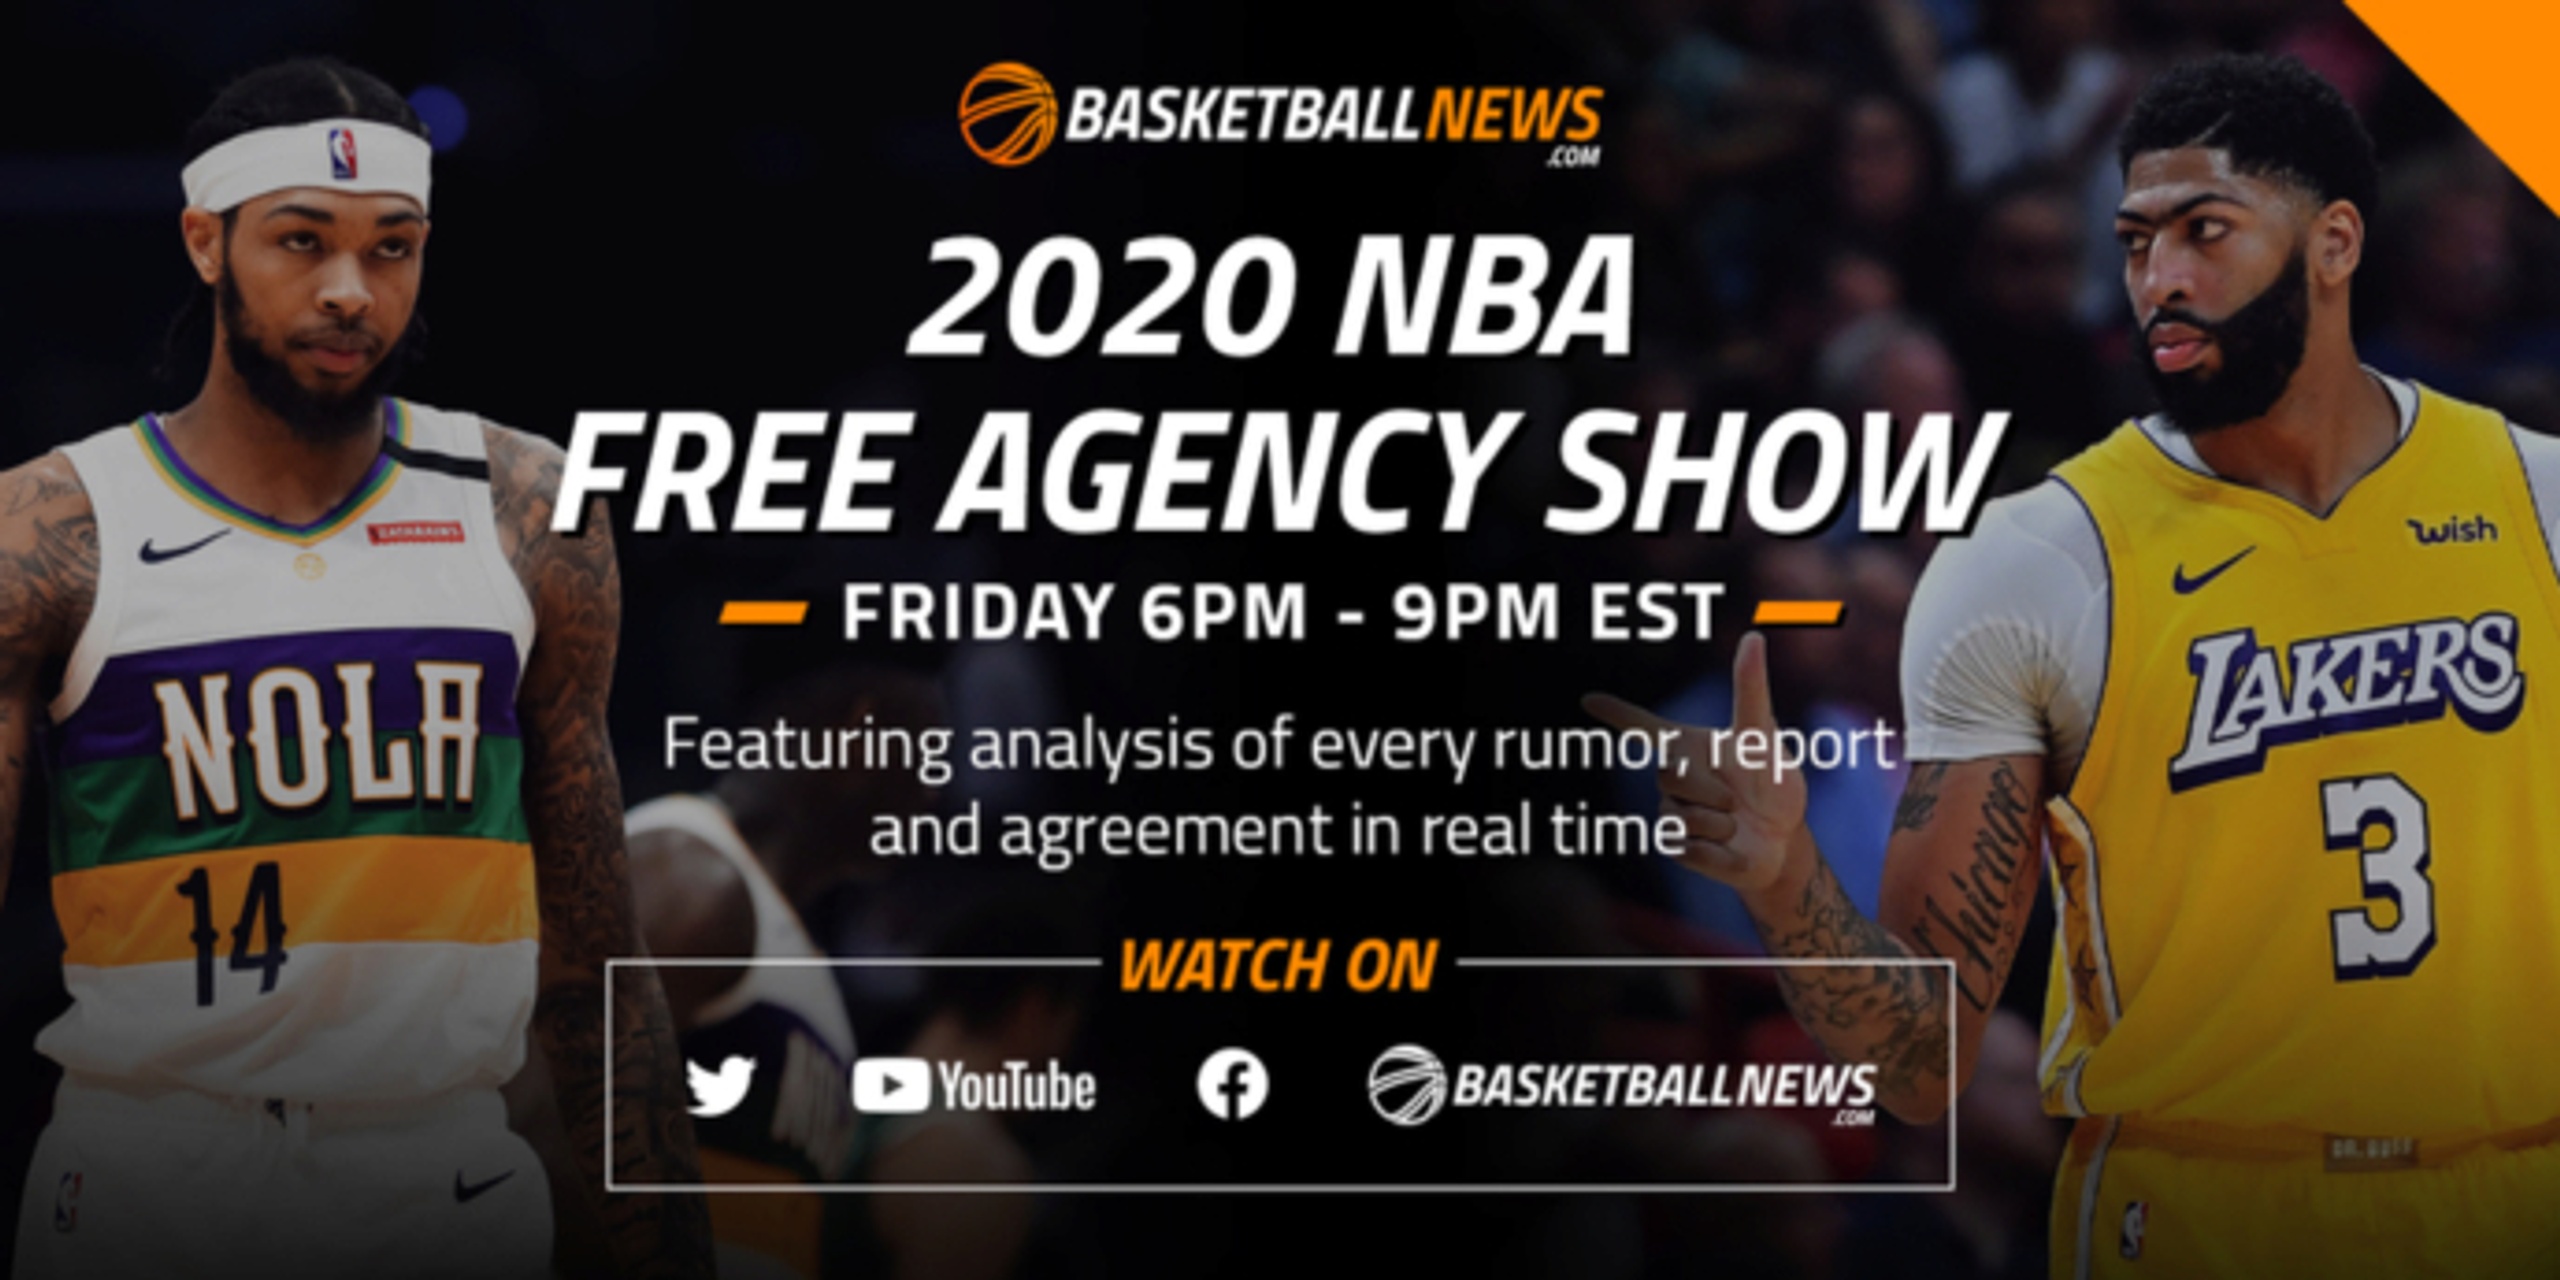 BasketballNews.com's 2020 NBA Free Agency Show